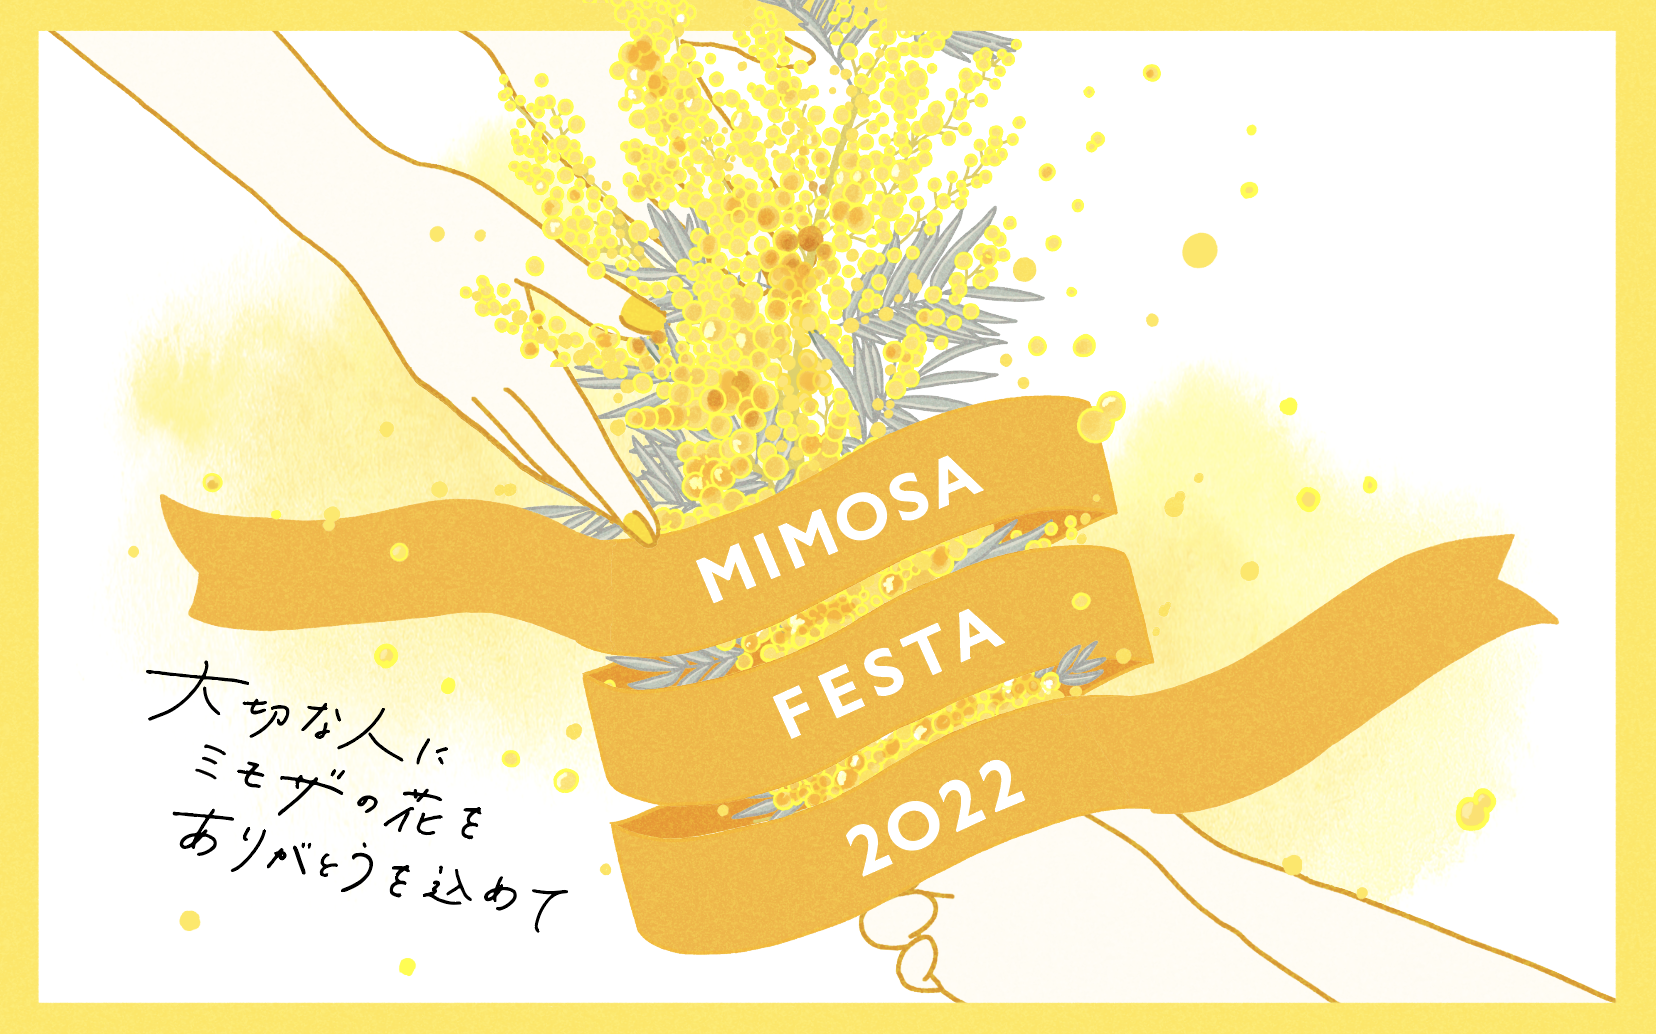 日本テレビ「Oha!4 NEWS LIVE 3.7 Mon」にて『MIMOSA FESTA 2022』が取り上げられました。